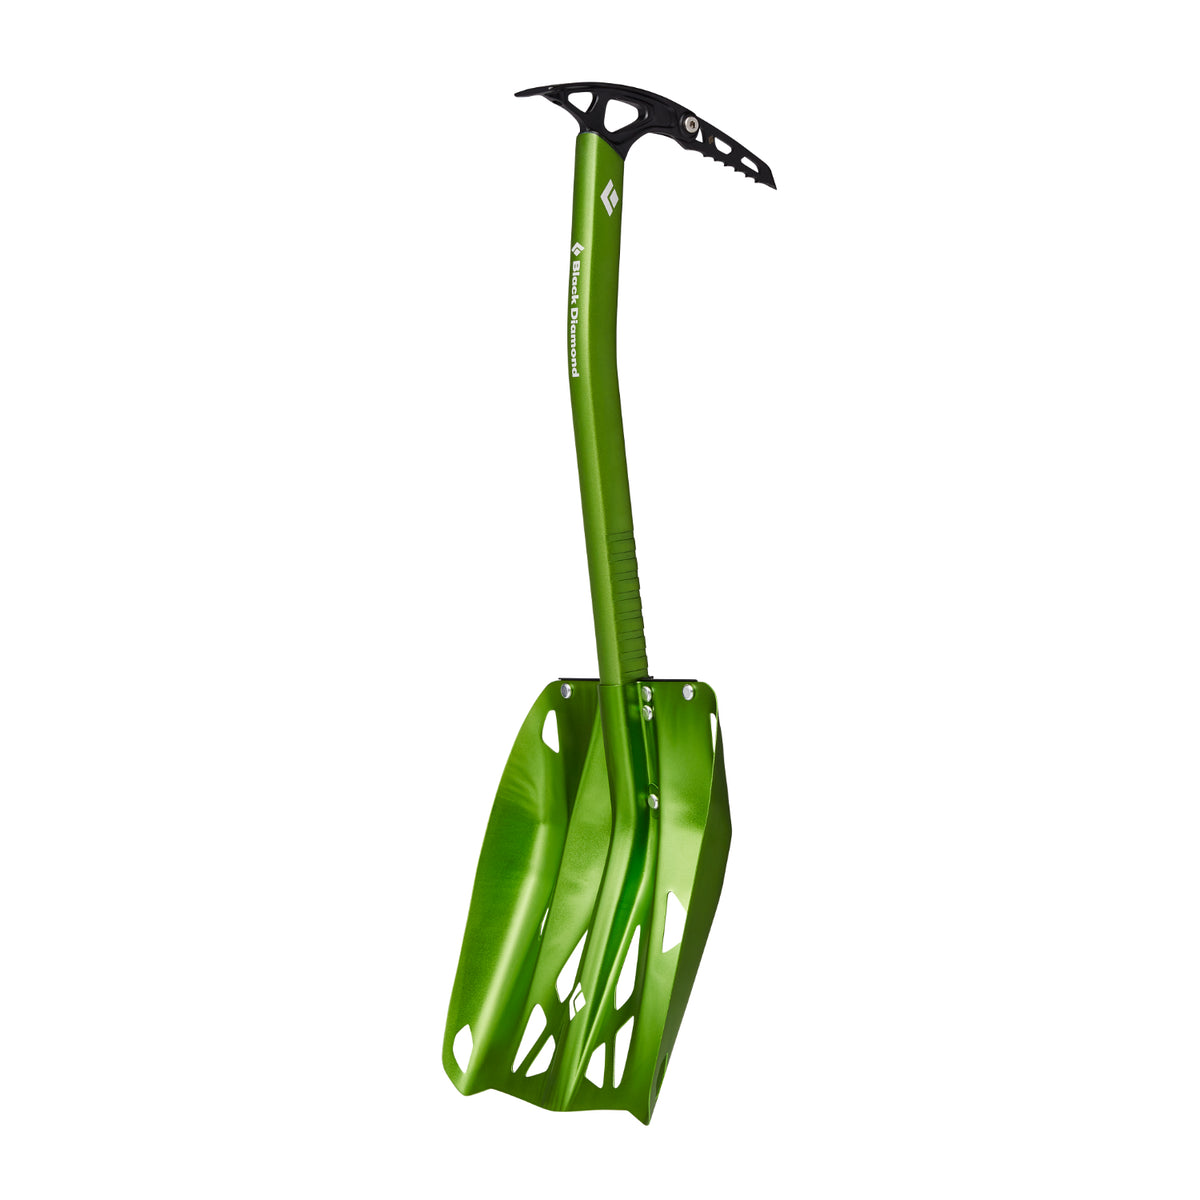 Black Diamond Venom LT Classic ice axe in green with shovel attachment